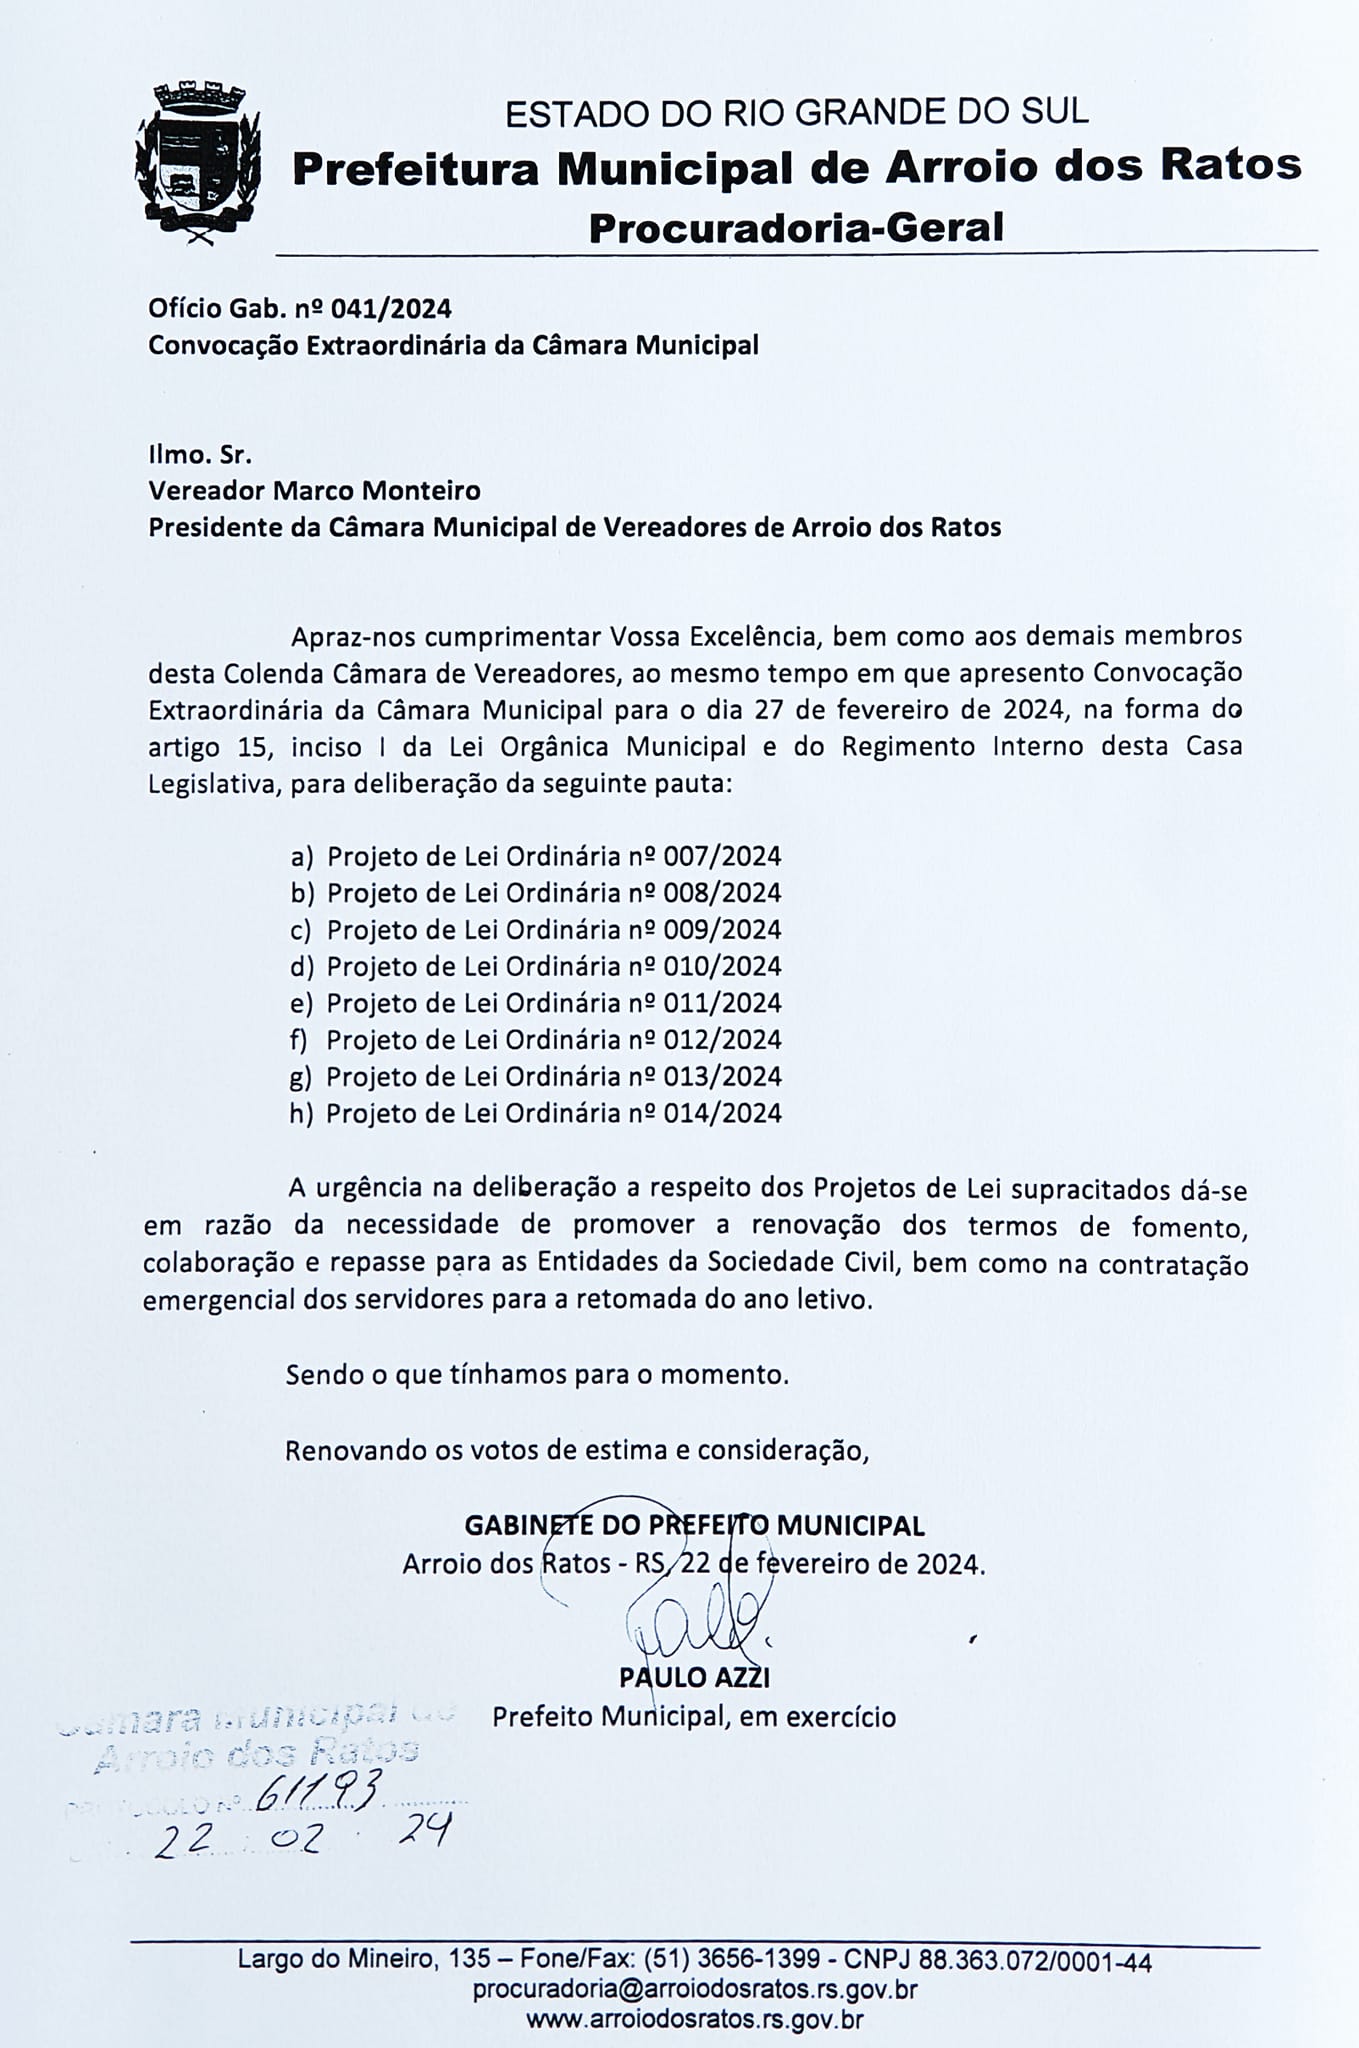 CONVOCAÇÃO EXTRAORDINÁRIA DA CÂMARA MUNICIPAL NO DIA 27 DE JANEIRO 